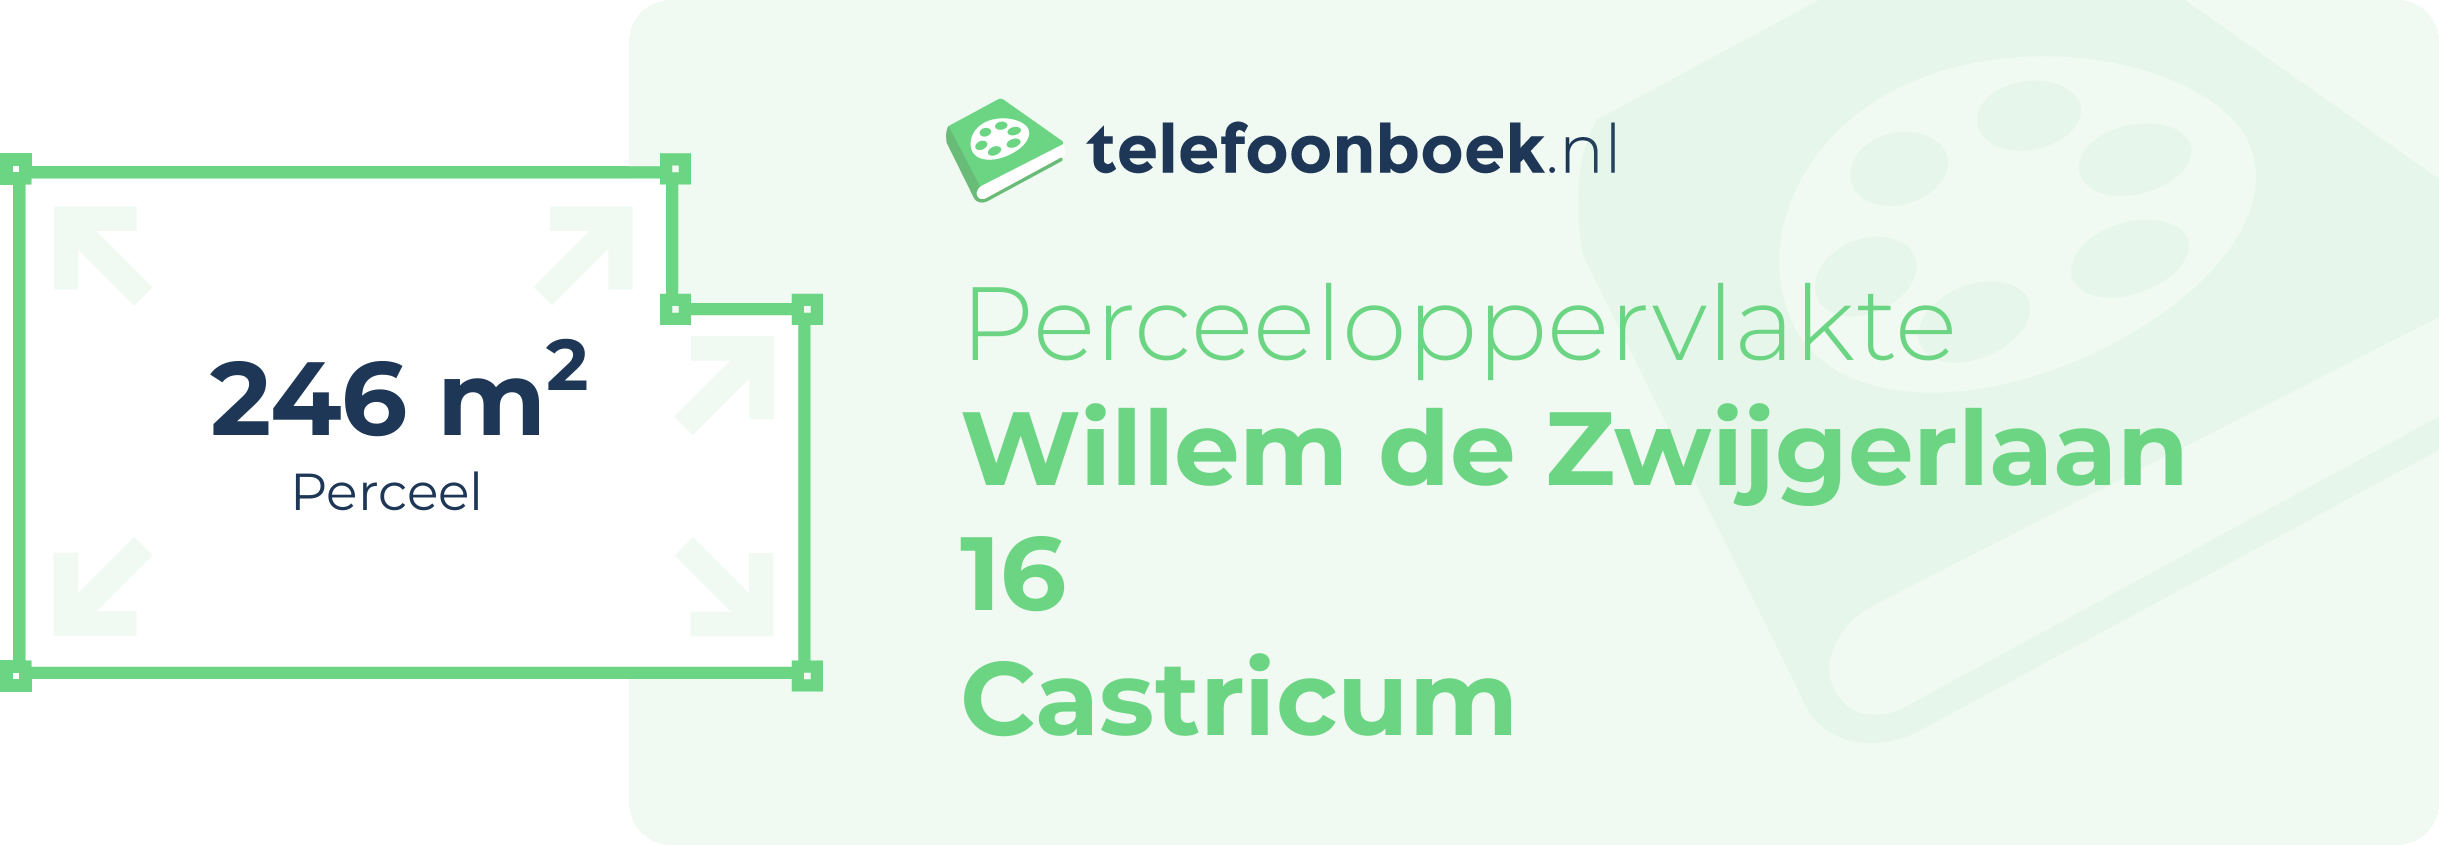 Perceeloppervlakte Willem De Zwijgerlaan 16 Castricum